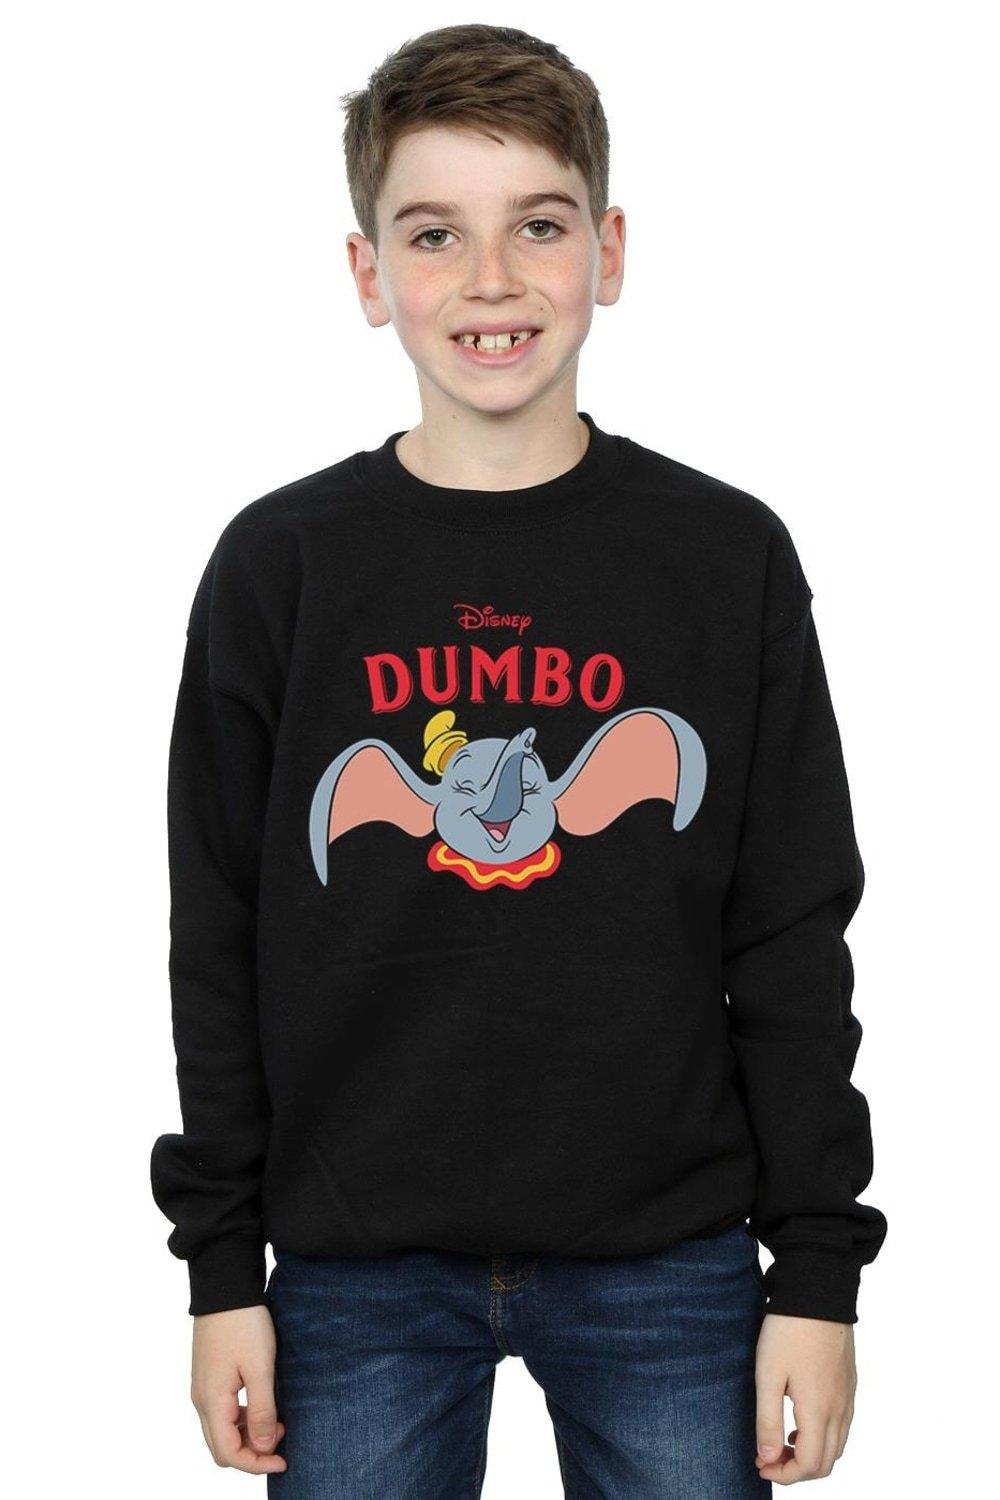 Dumbo Smile Sweatshirt